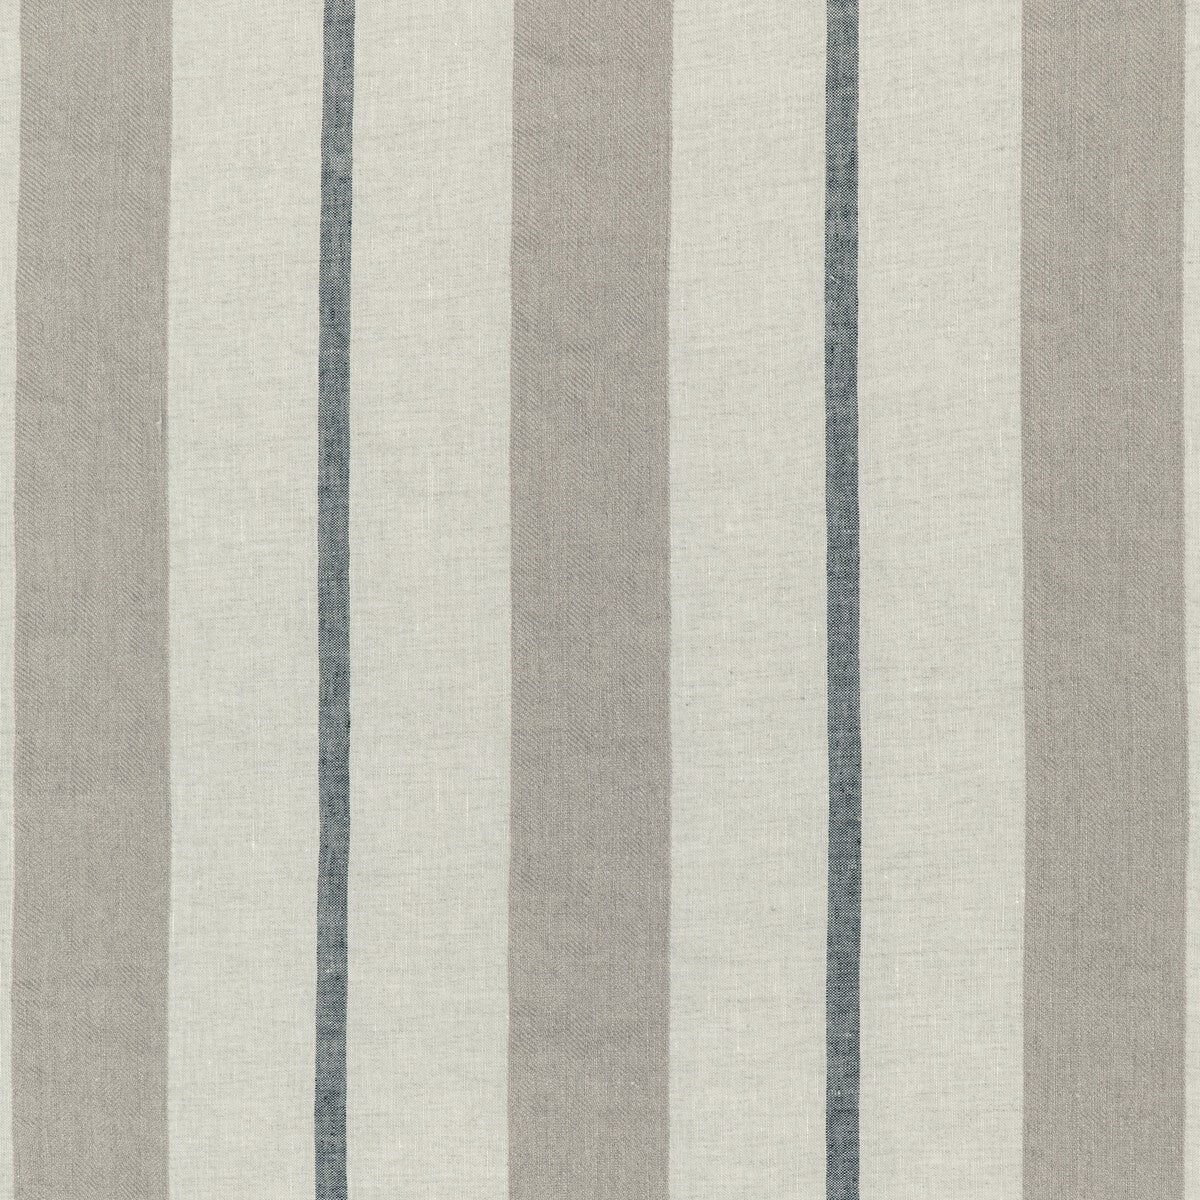 Kravet Design fabric in 4845-1606 color - pattern 4845.1606.0 - by Kravet Design